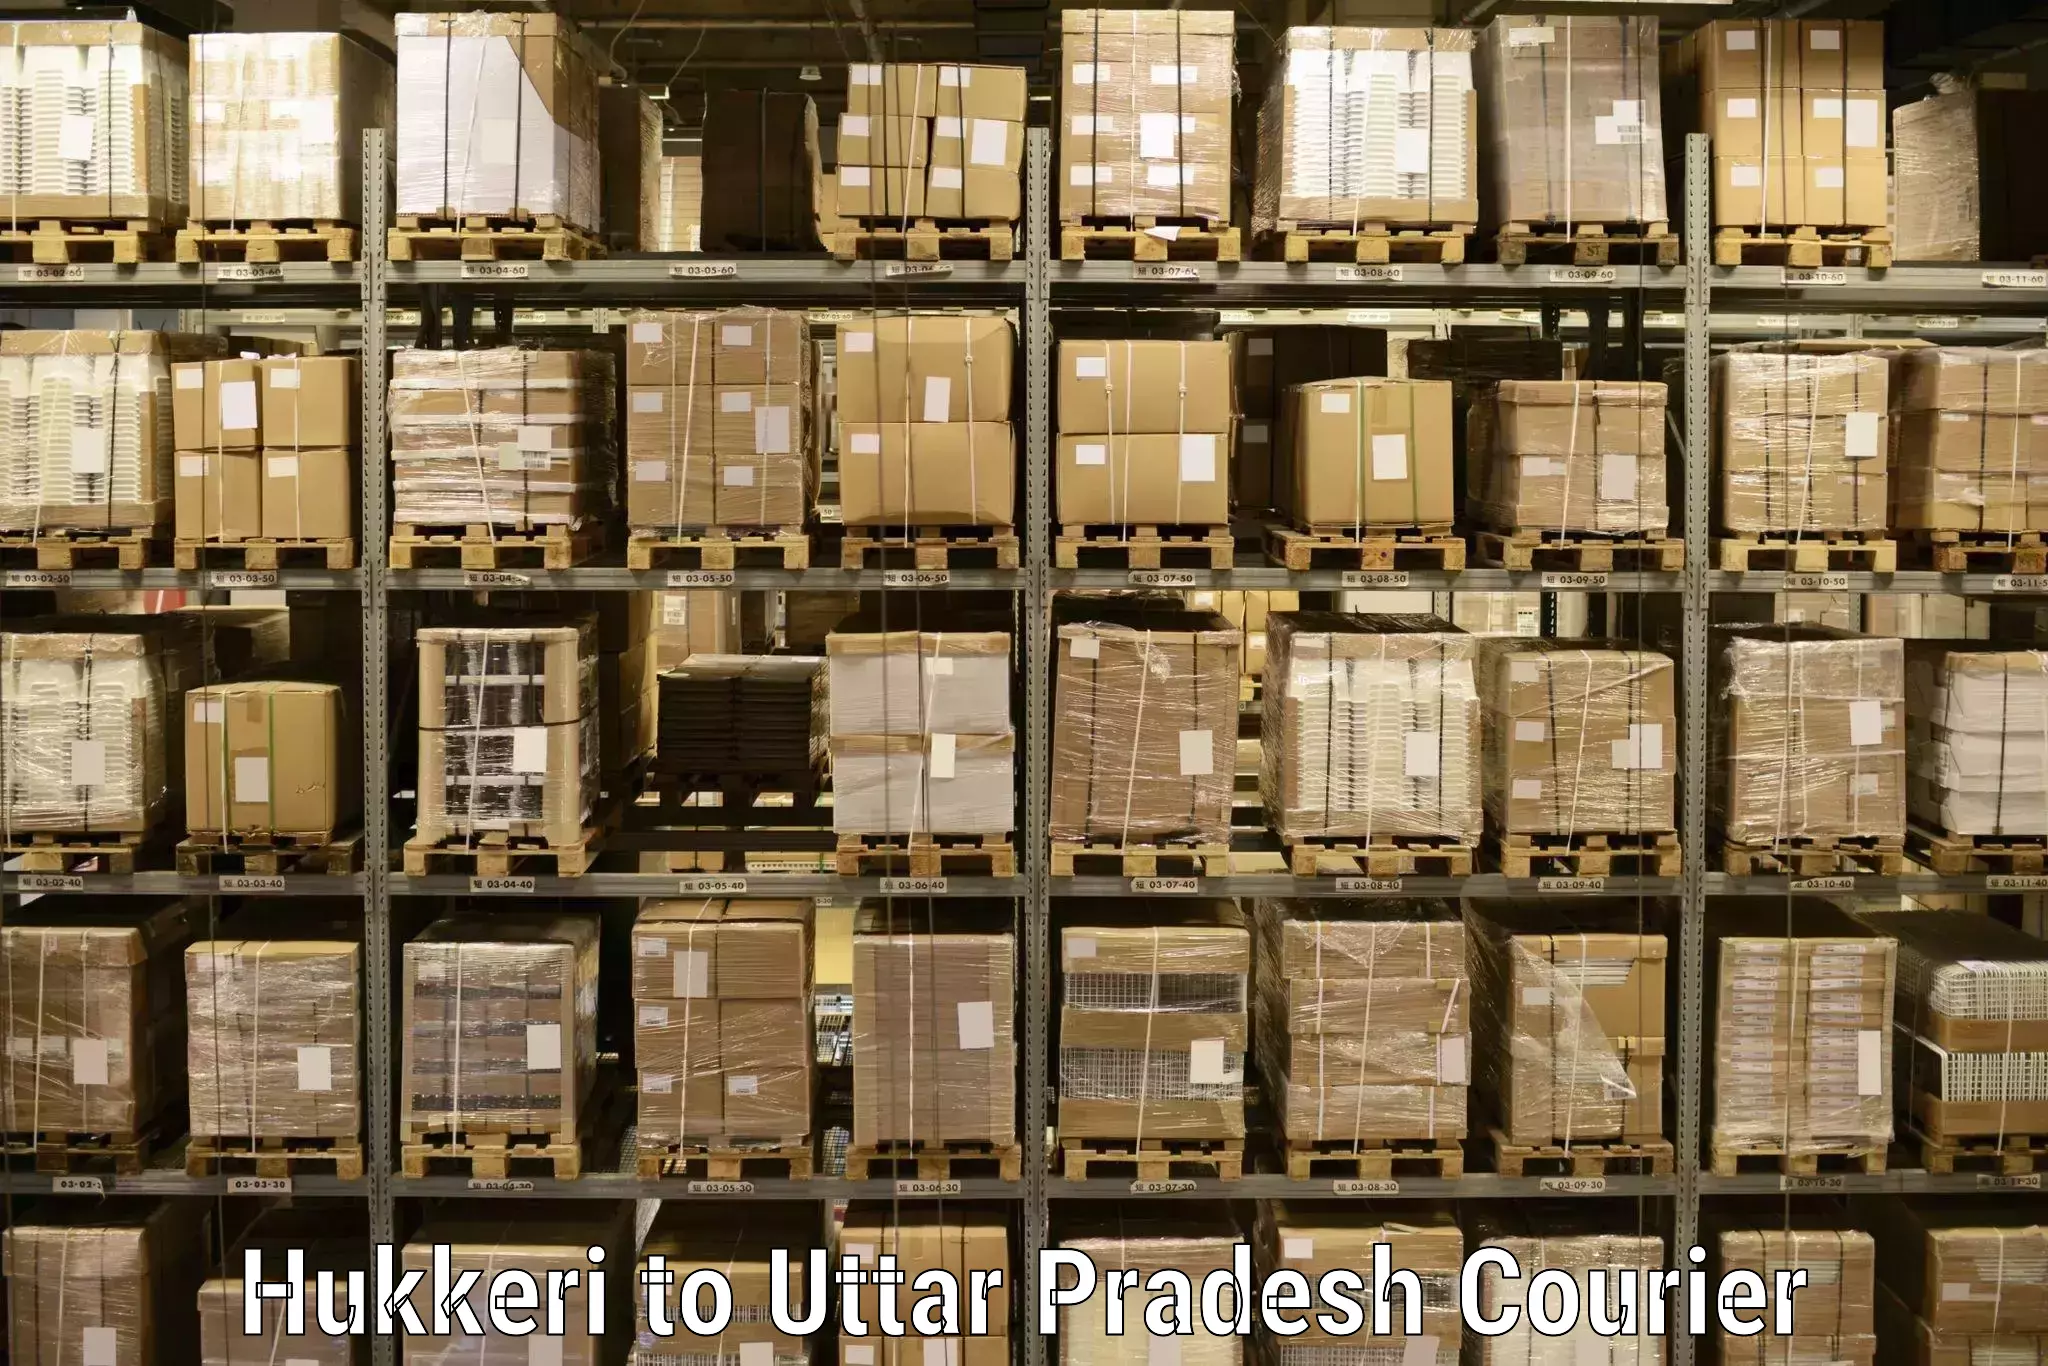 Modern parcel services Hukkeri to Auraiya